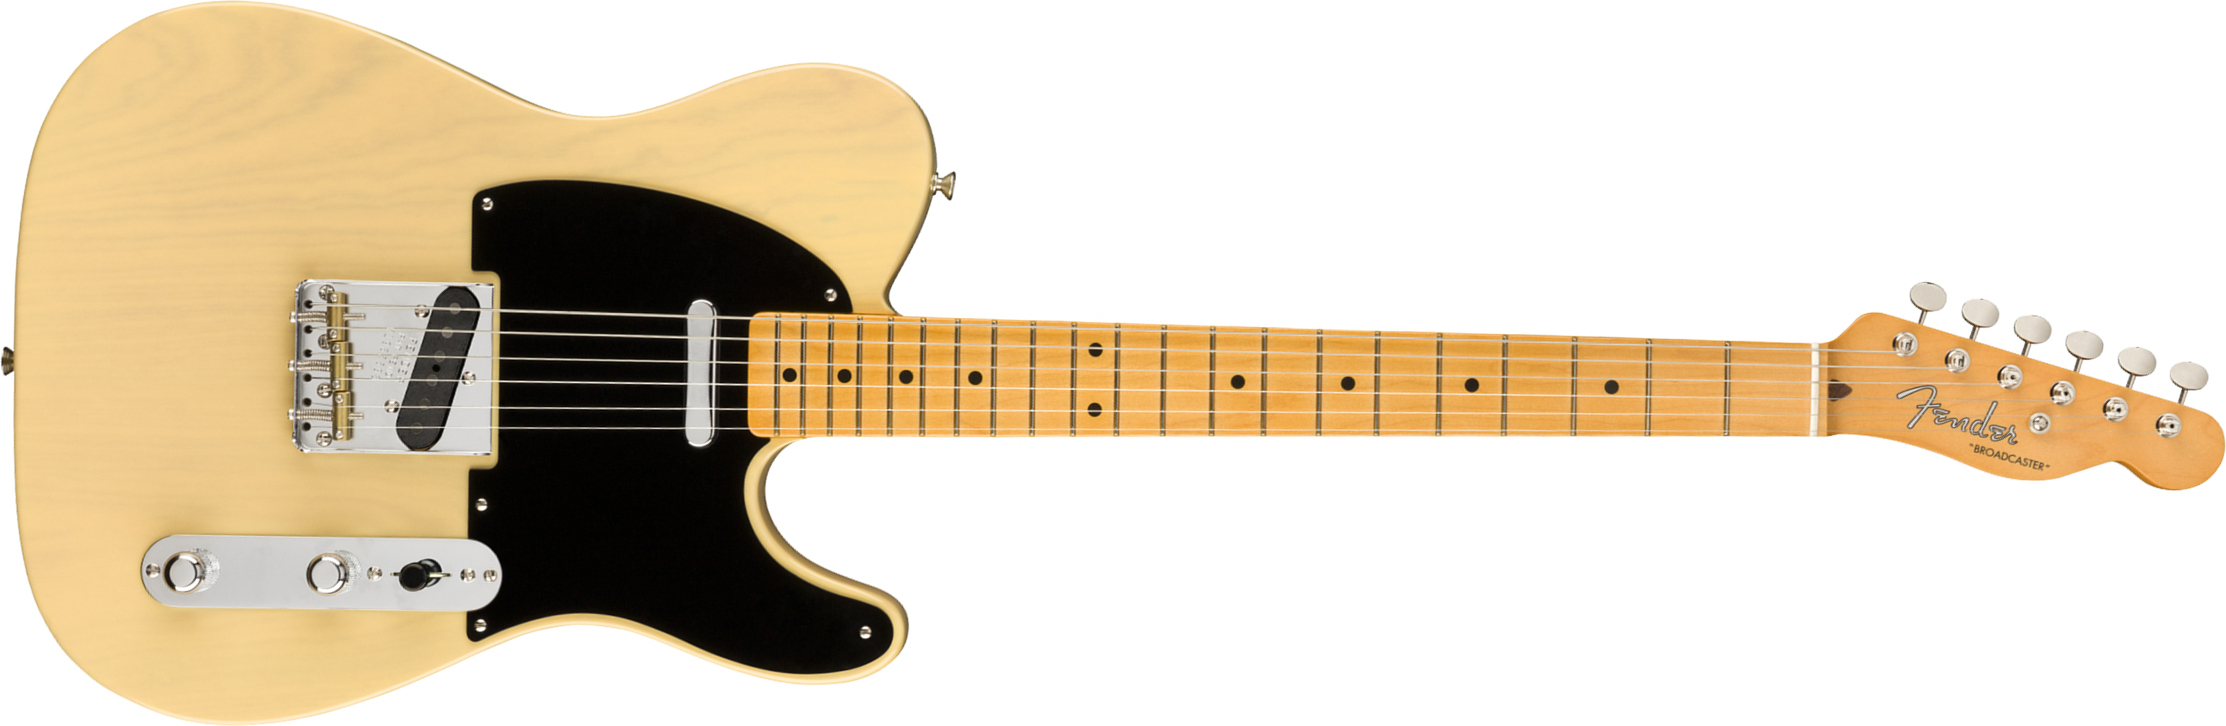 Fender Tele Broadcaster 70th Anniversary Usa Mn - Blackguard Blonde - E-Gitarre in Teleform - Main picture